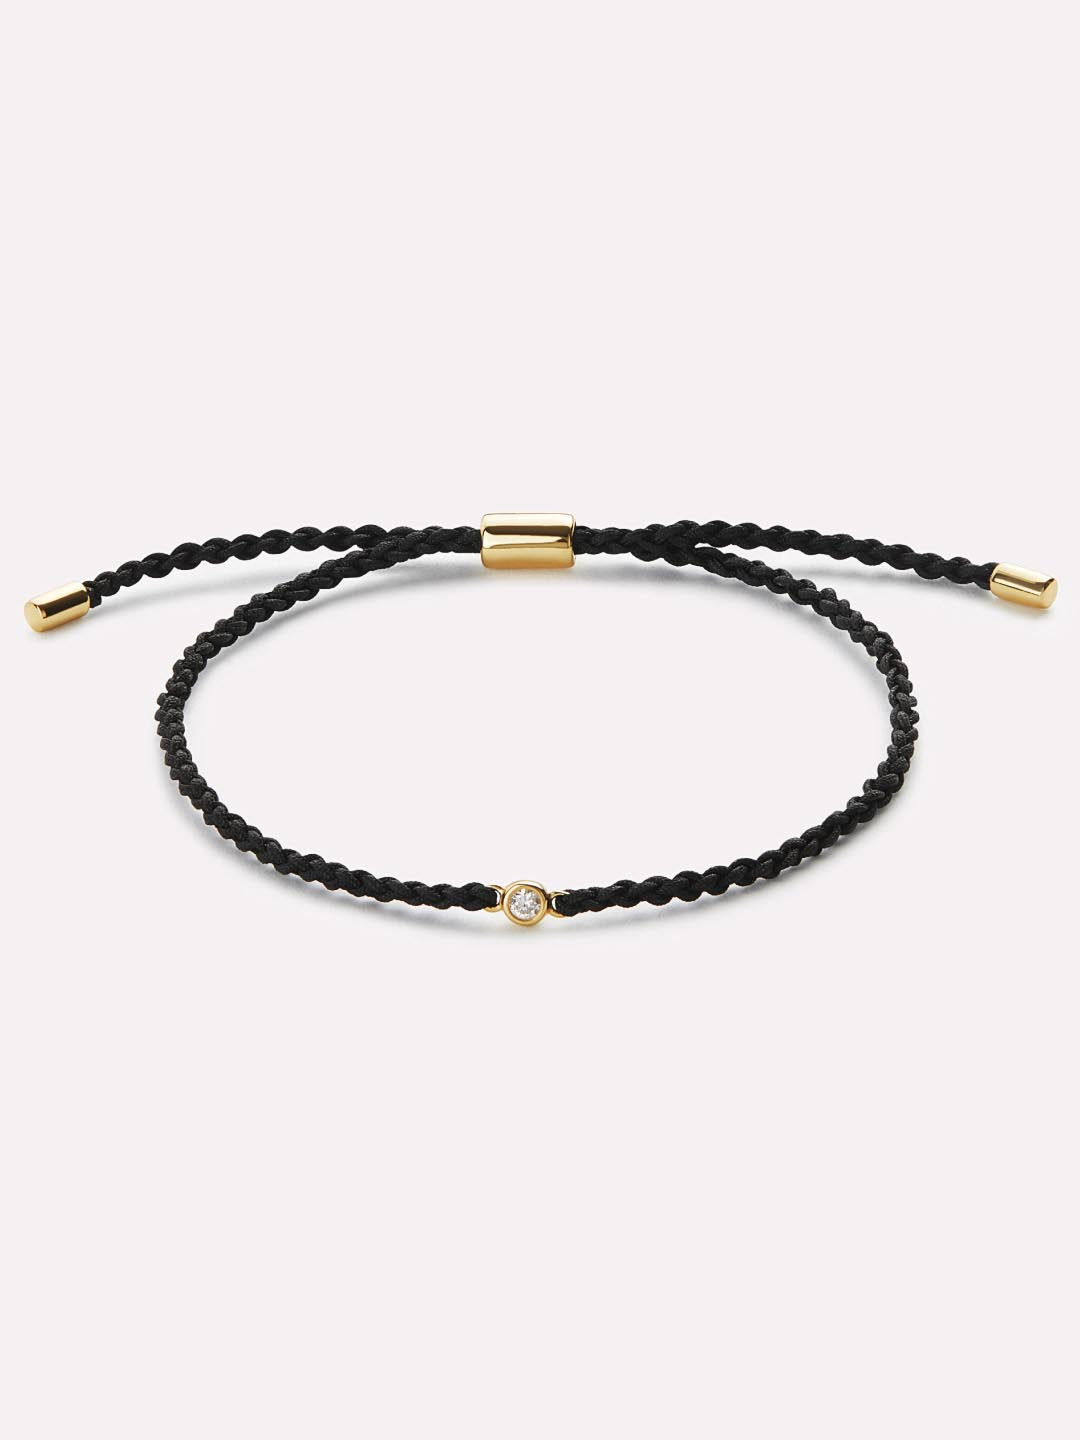 Twisted Chain Bracelet - Lisa | Ana Luisa Jewelry. 14K Gold On Brass,$59 |  eBay